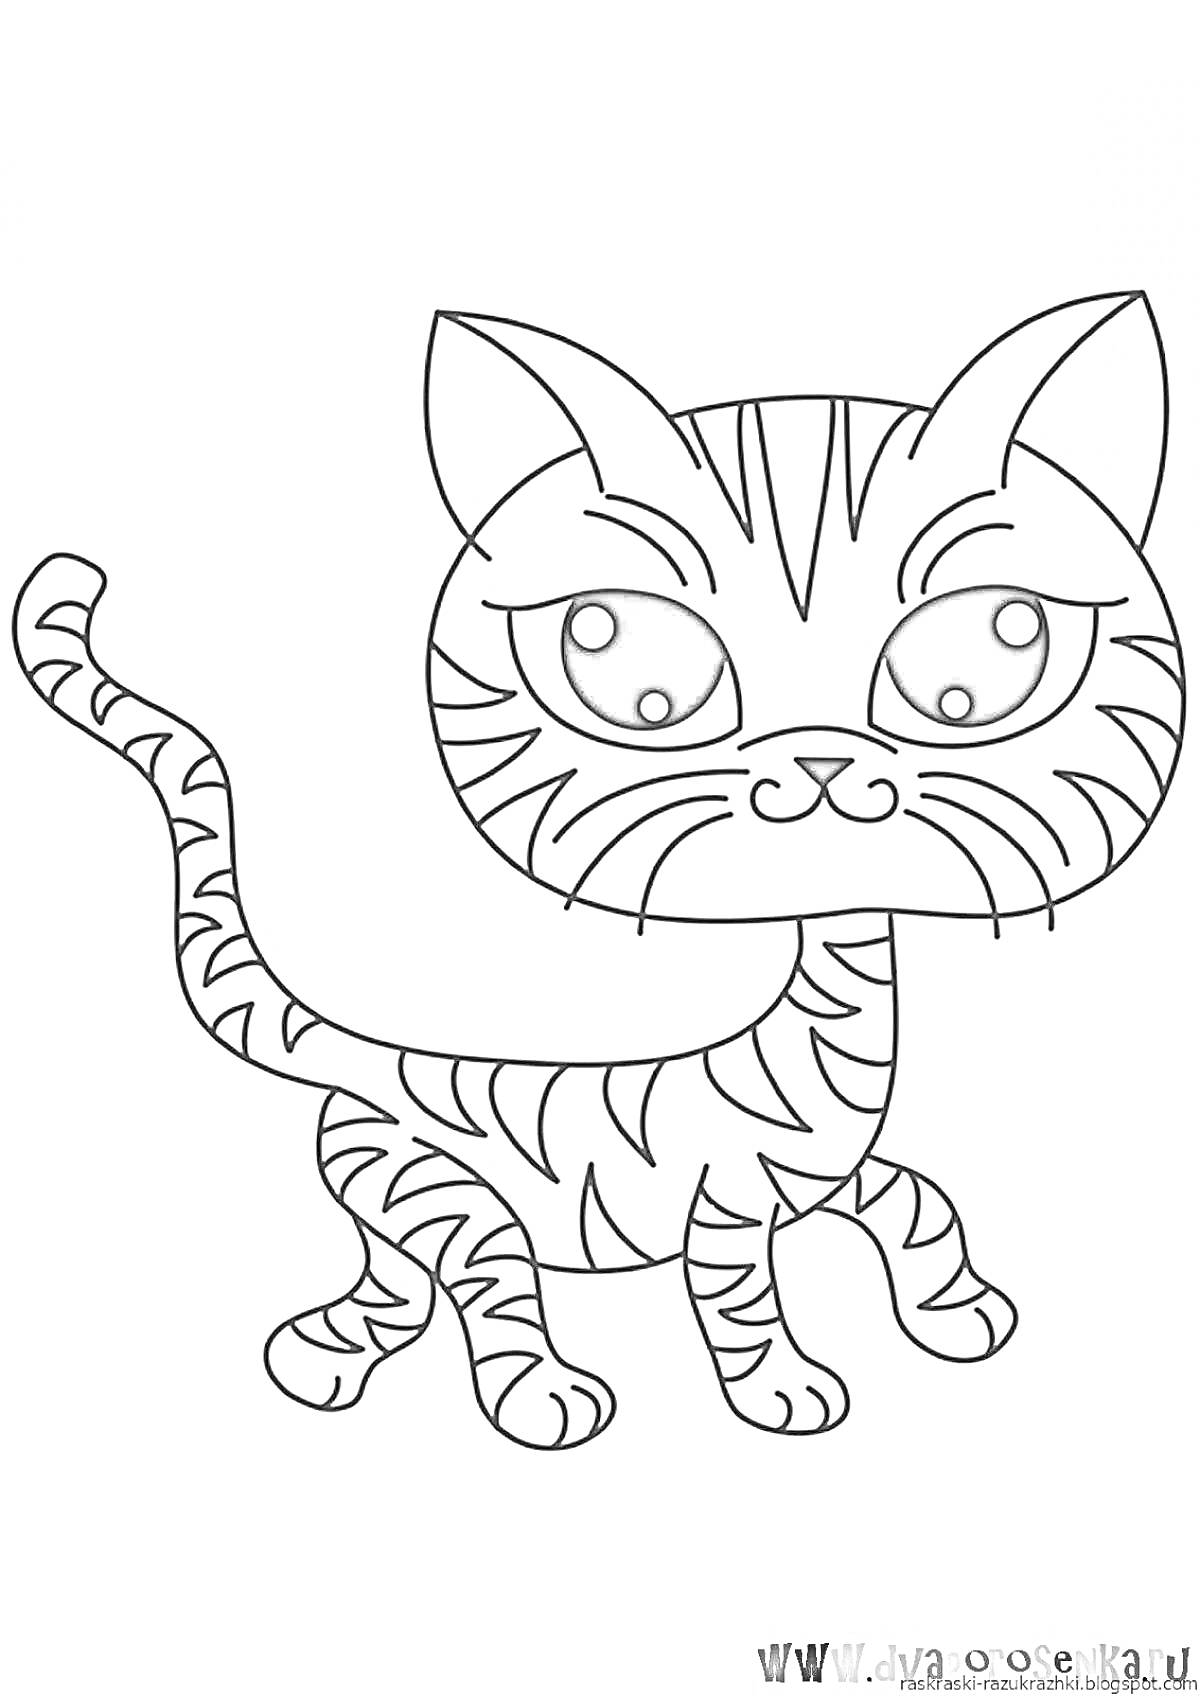 Раскраска с изображением стоящего полосатого кота с большими глазами